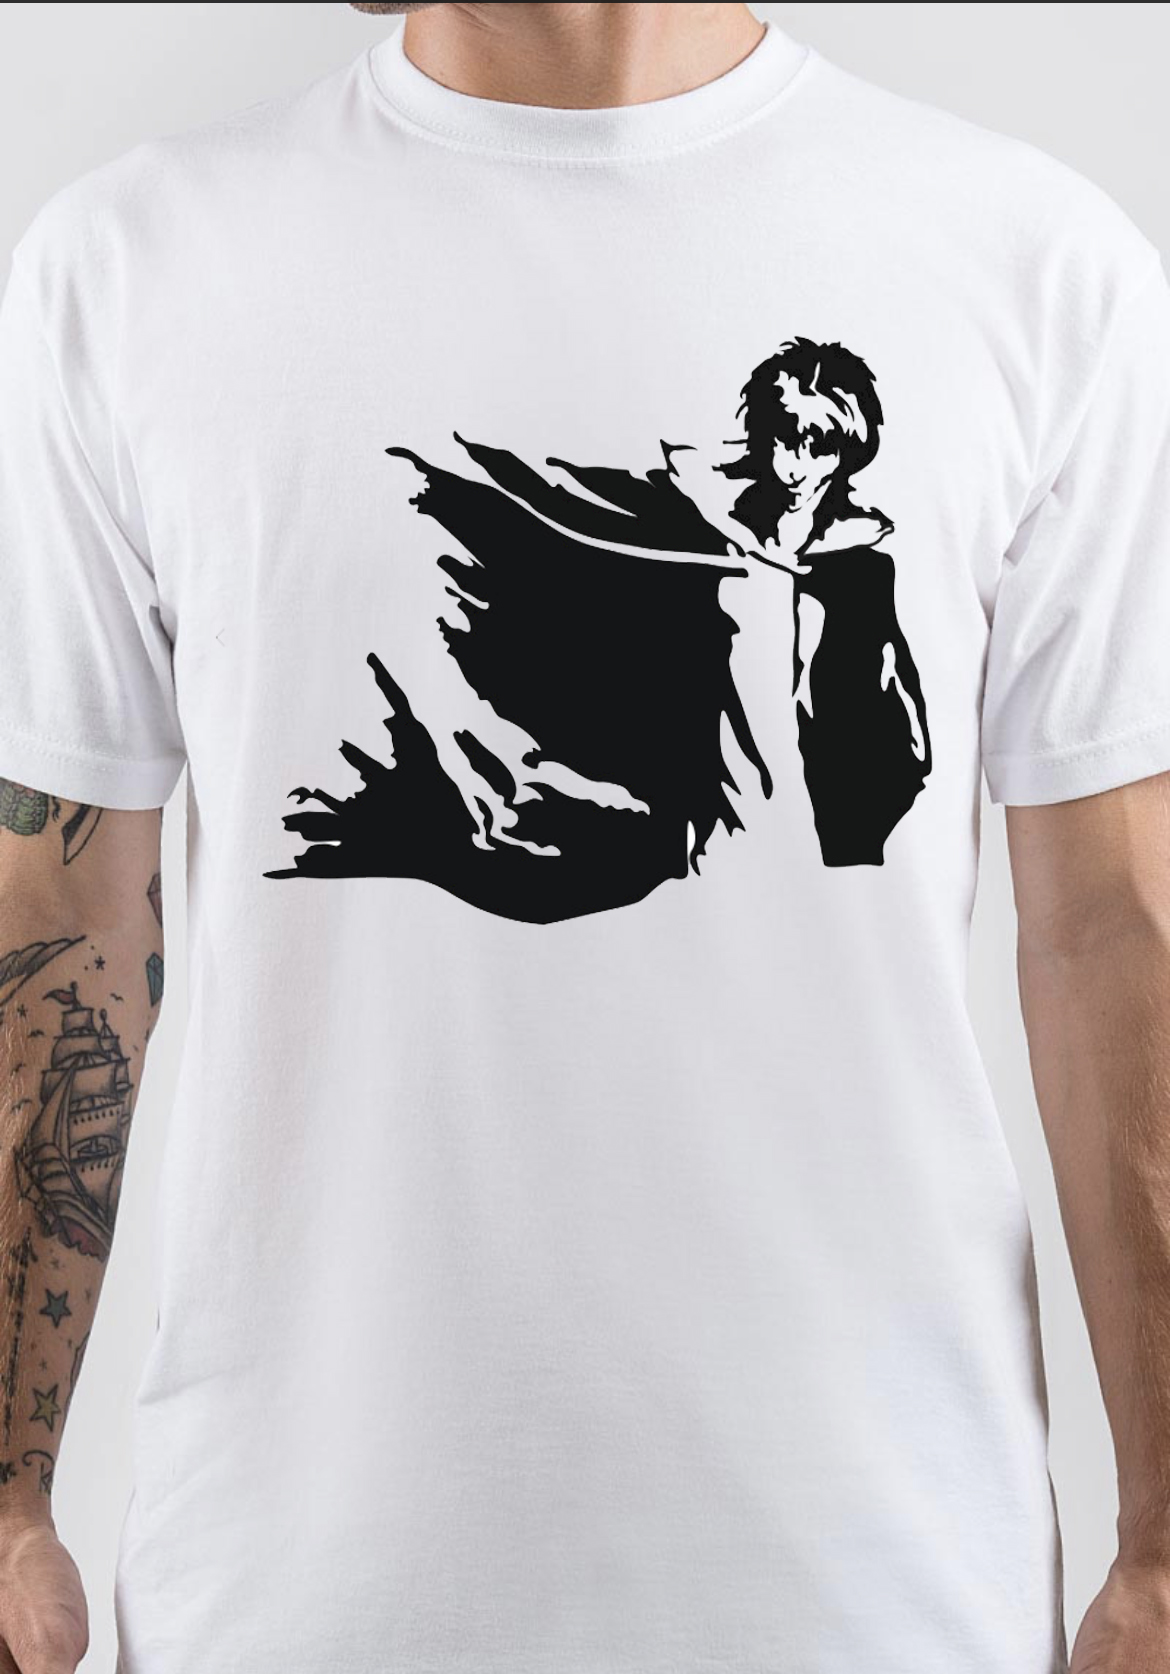 Neil Gaiman T-Shirt And Merchandise